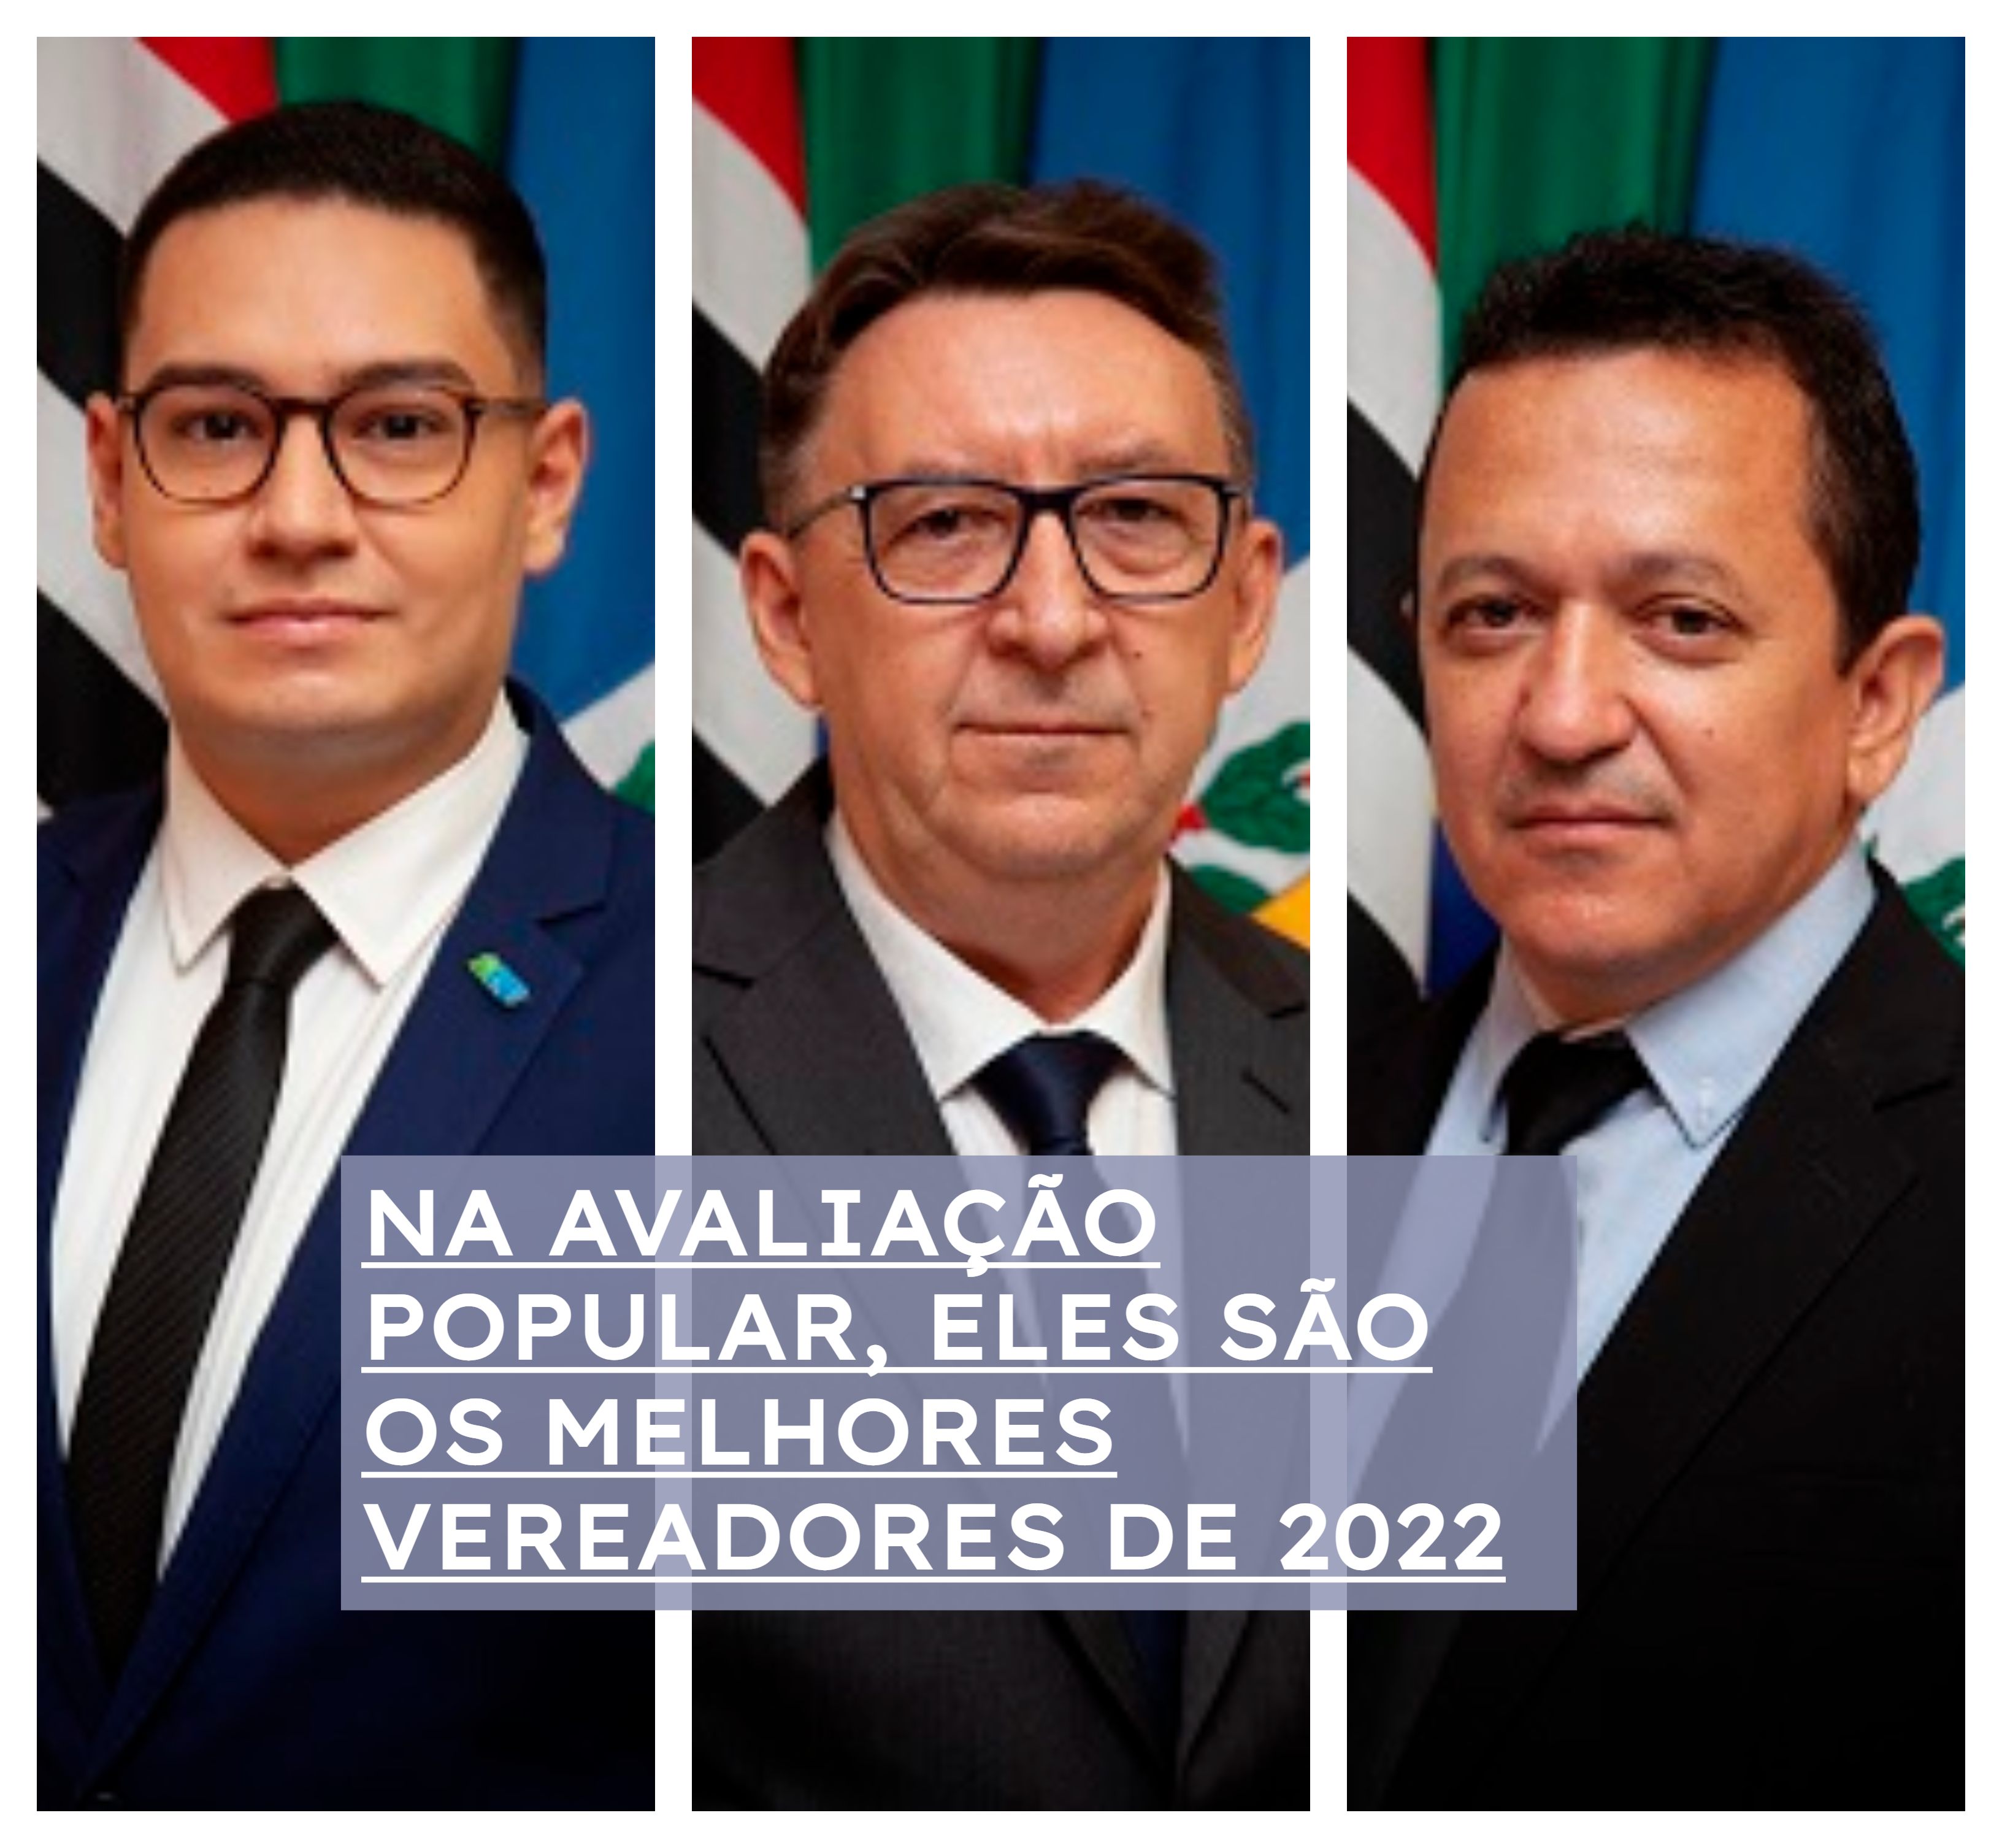 Fábio Jorge, Cícero Landim e Cordeiro dos Santos, os escolhidos em 2022